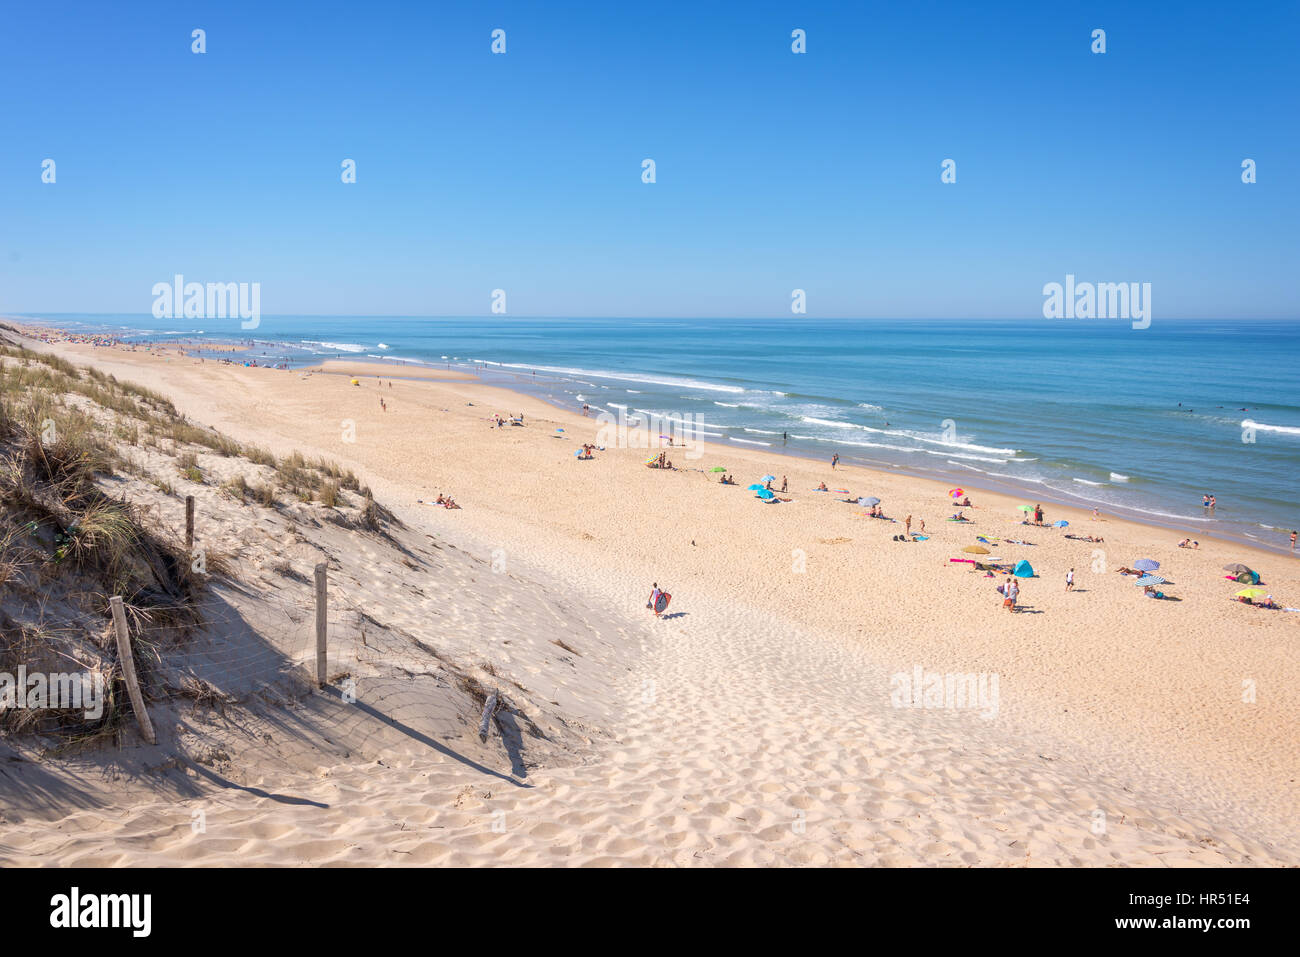 La dune et la plage de Lacanau, océan Atlantique, France Banque D'Images